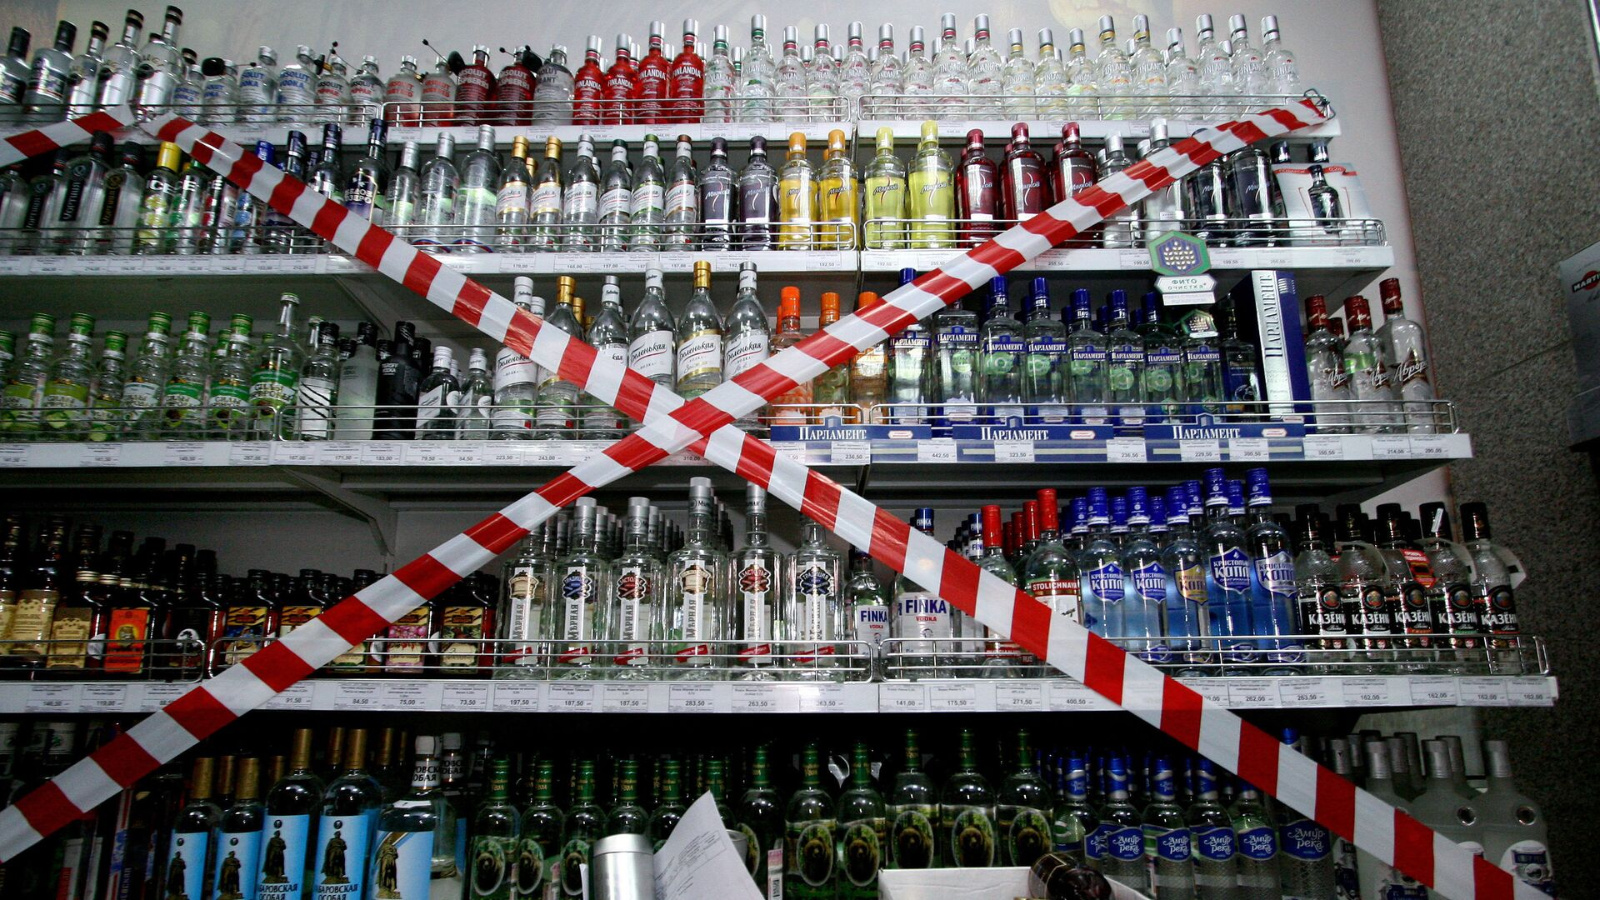 Руководителям предприятий Альметьевска рекомендуют ограничить продажу алкоголя 9 мая